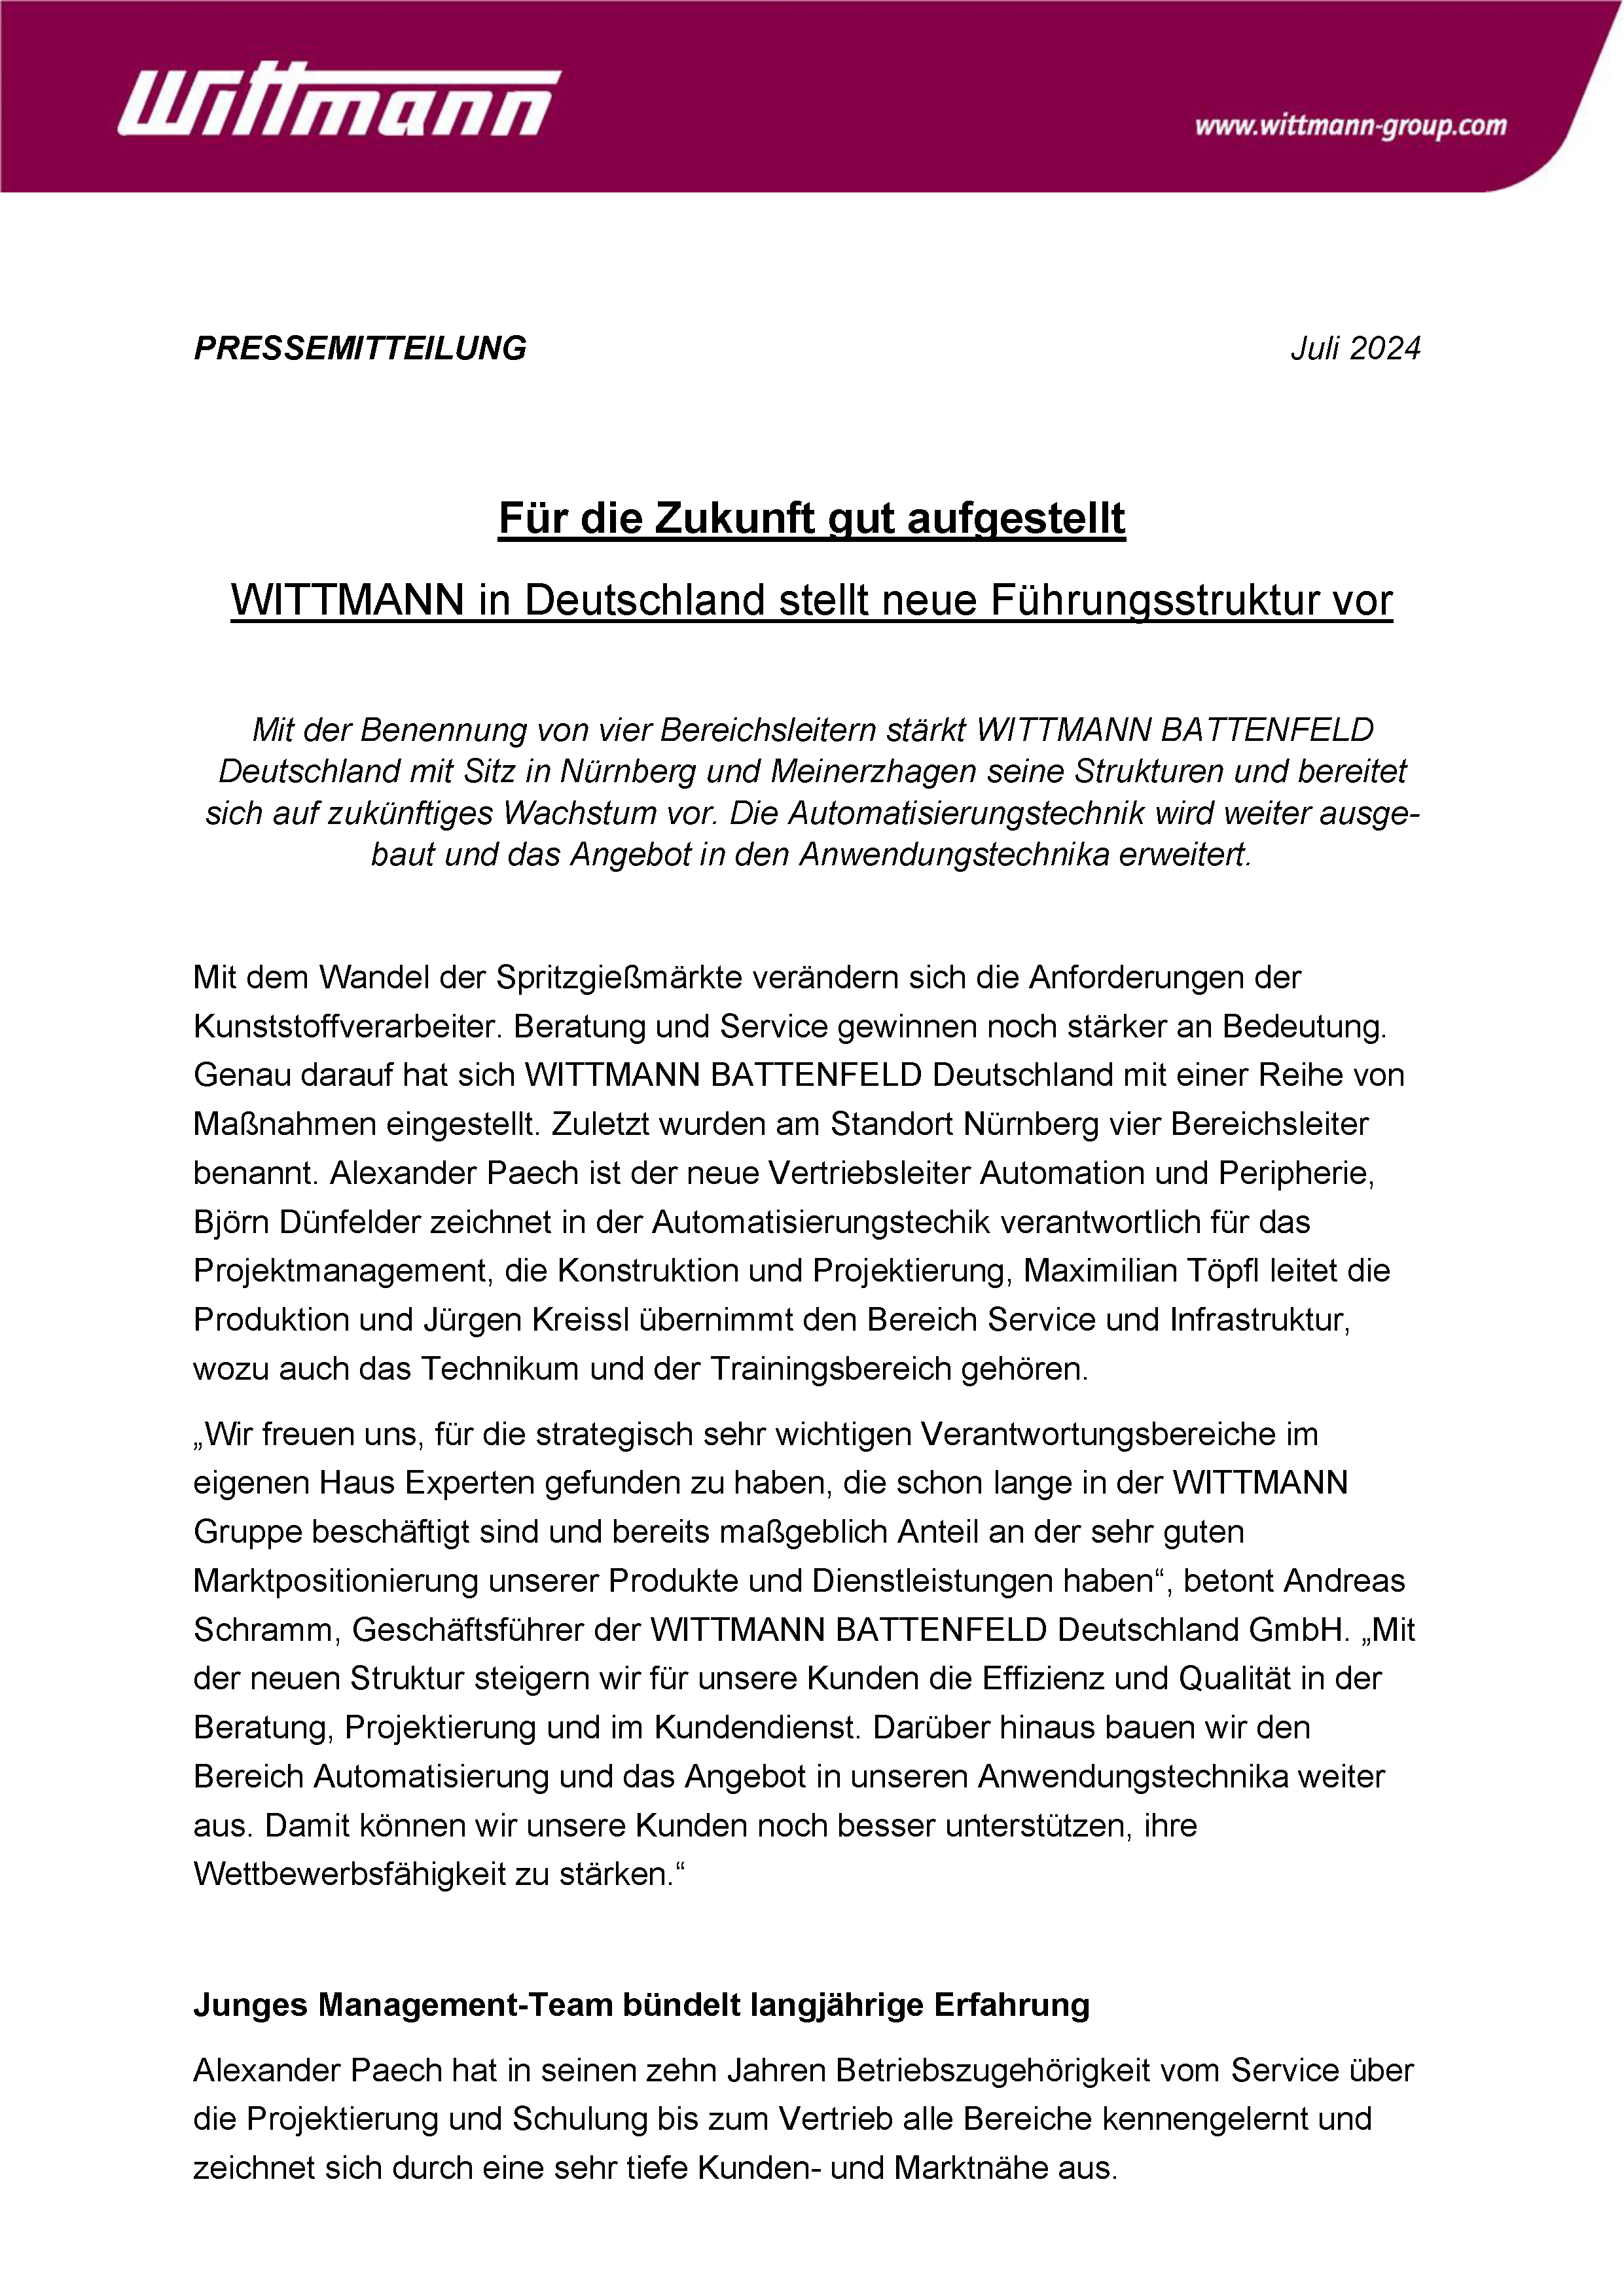 WITTMANN Pressemitteilung Deutschland Management_WEB